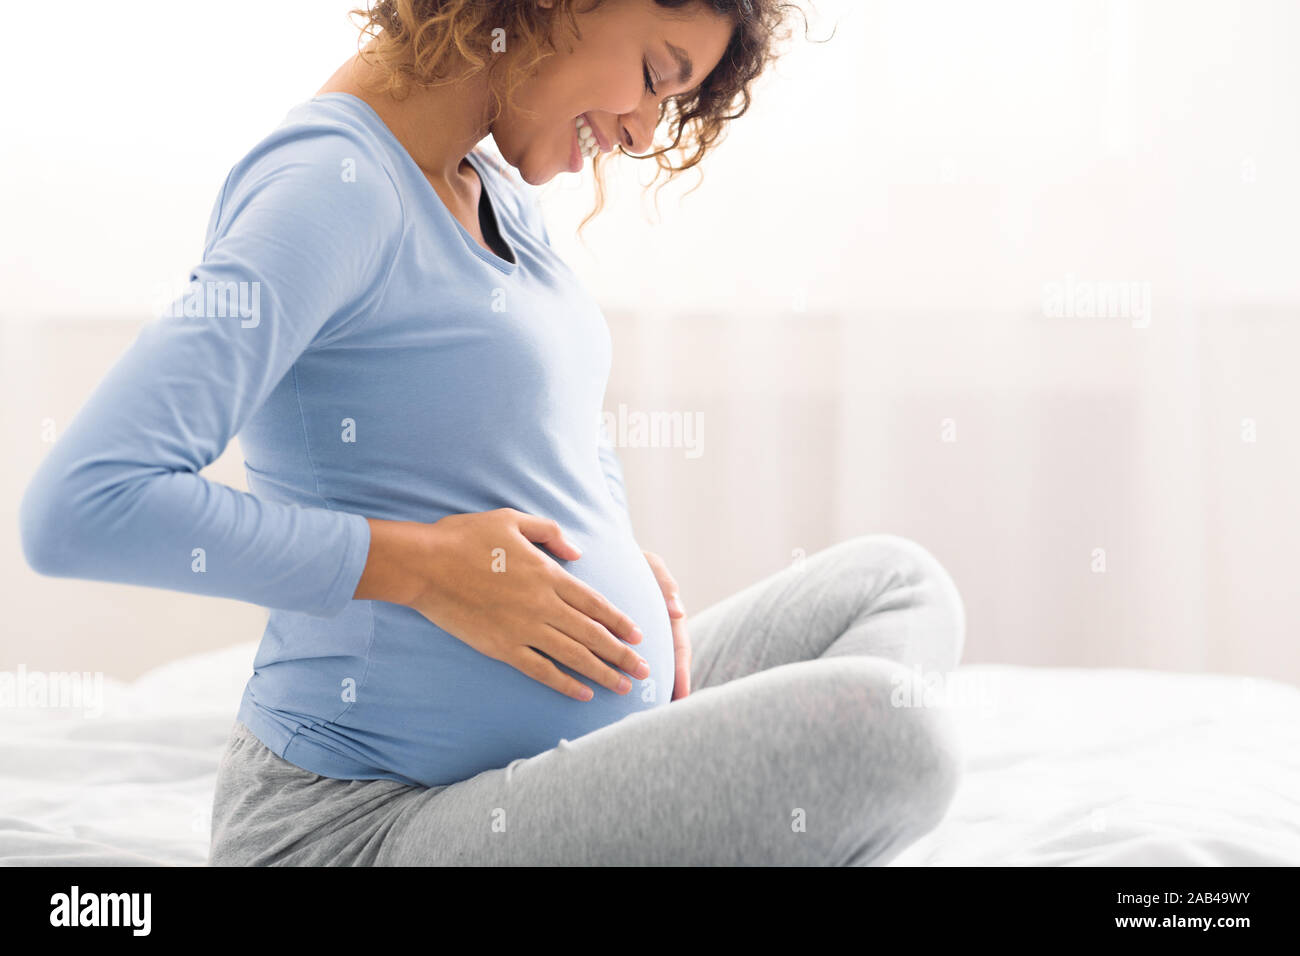 Heureux femme enceinte toucher ventre, side view Banque D'Images